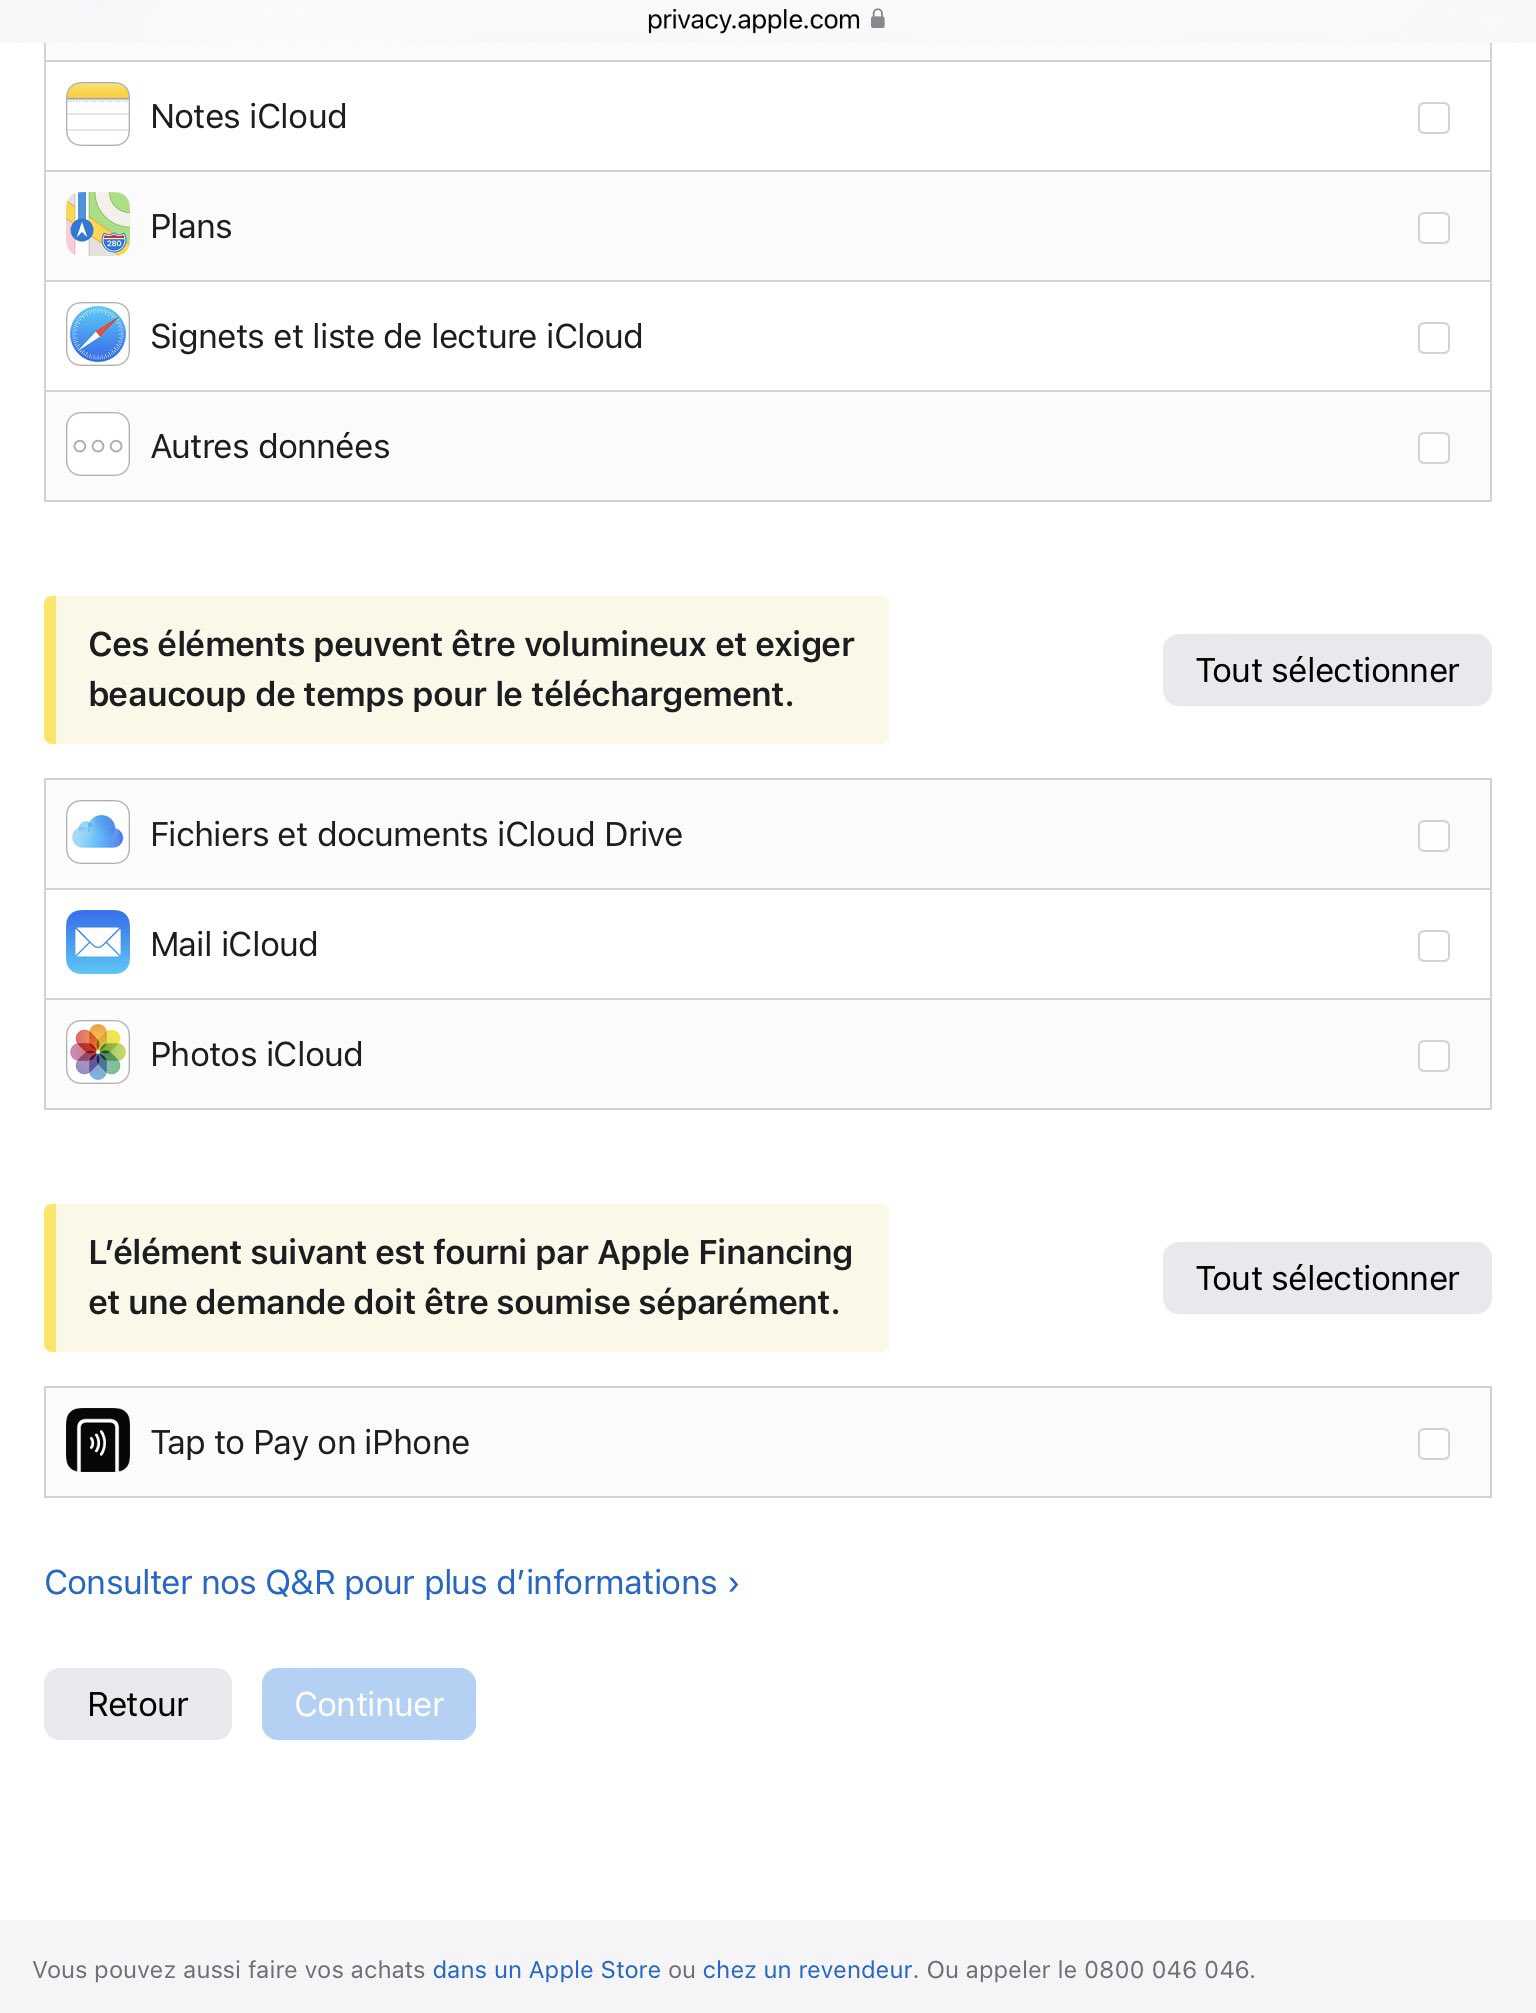 Capture d´écran privacy.apple.com où l´accès à iCloud.com est désactivé suite